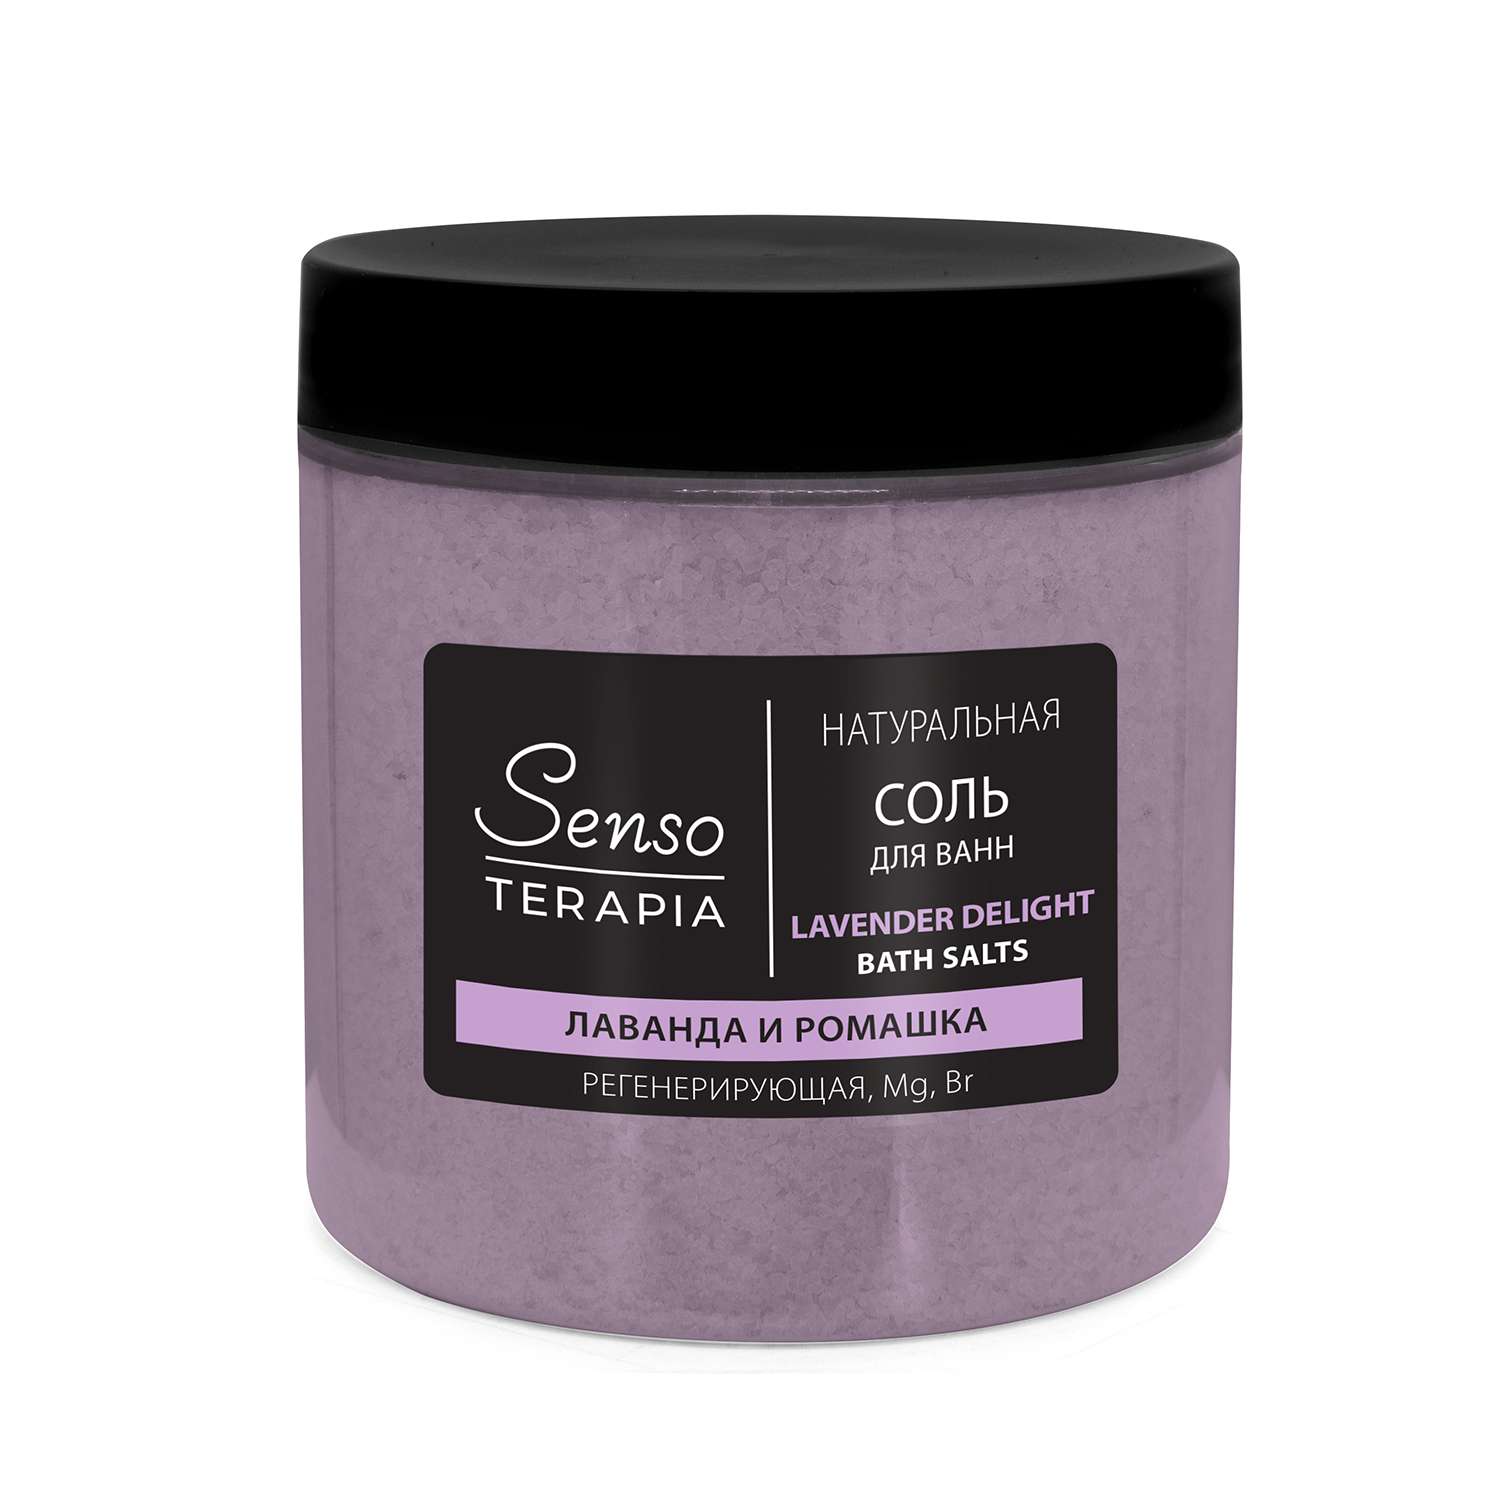 Соль для ванн Senso Terapia Натуральная магниево-сульфатная лаванда и ромашка регенерирующая Lavender delight 600 г - фото 1